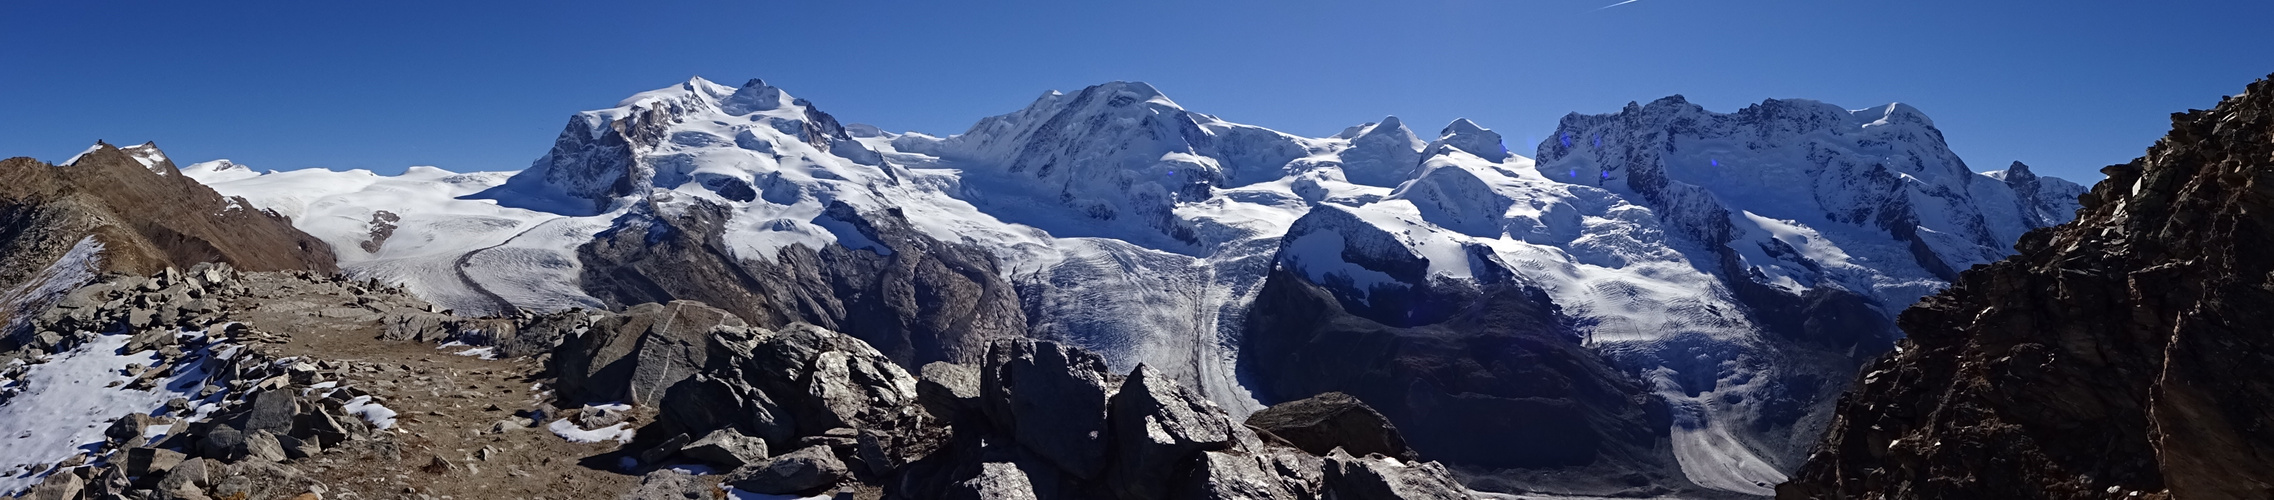 Der Blick etwas abseits vom weltbekannten Logenplatz über Zermatt